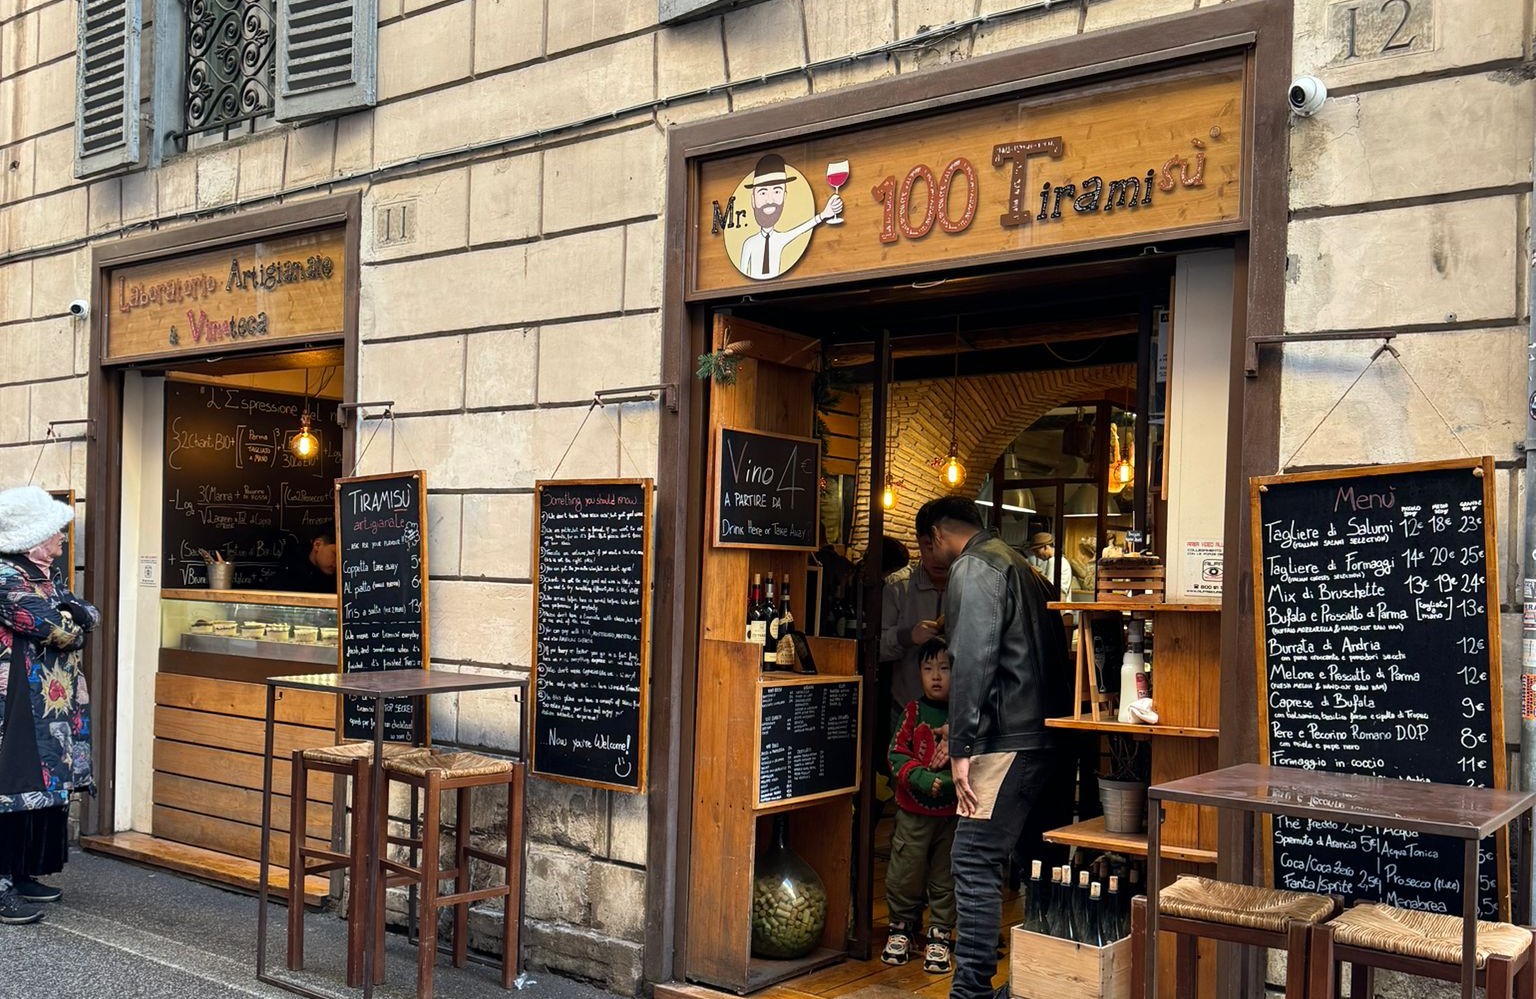 Roma’da bu küçücük dükkanda 100 çeşit tiramisu yapılıyor... Evet, yanlış duymadınız! Tam 100 farklı tiramisu…